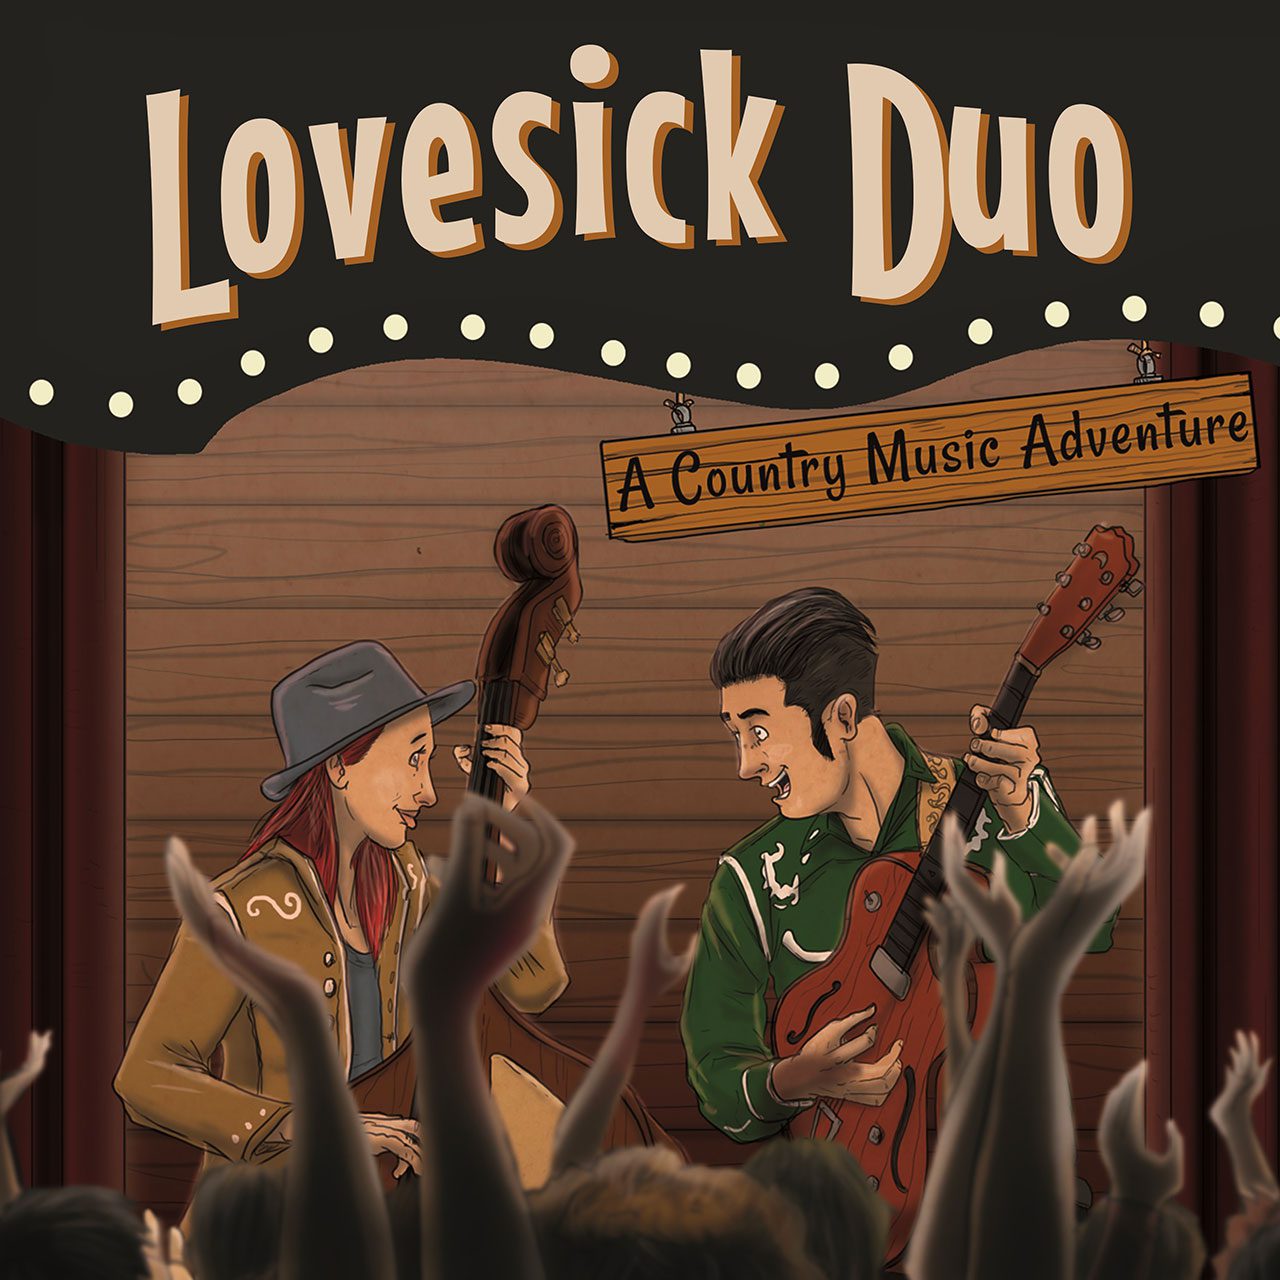 Lovesick Duo presentano "A Country Music Adventure", nuovo album + libro illustrato